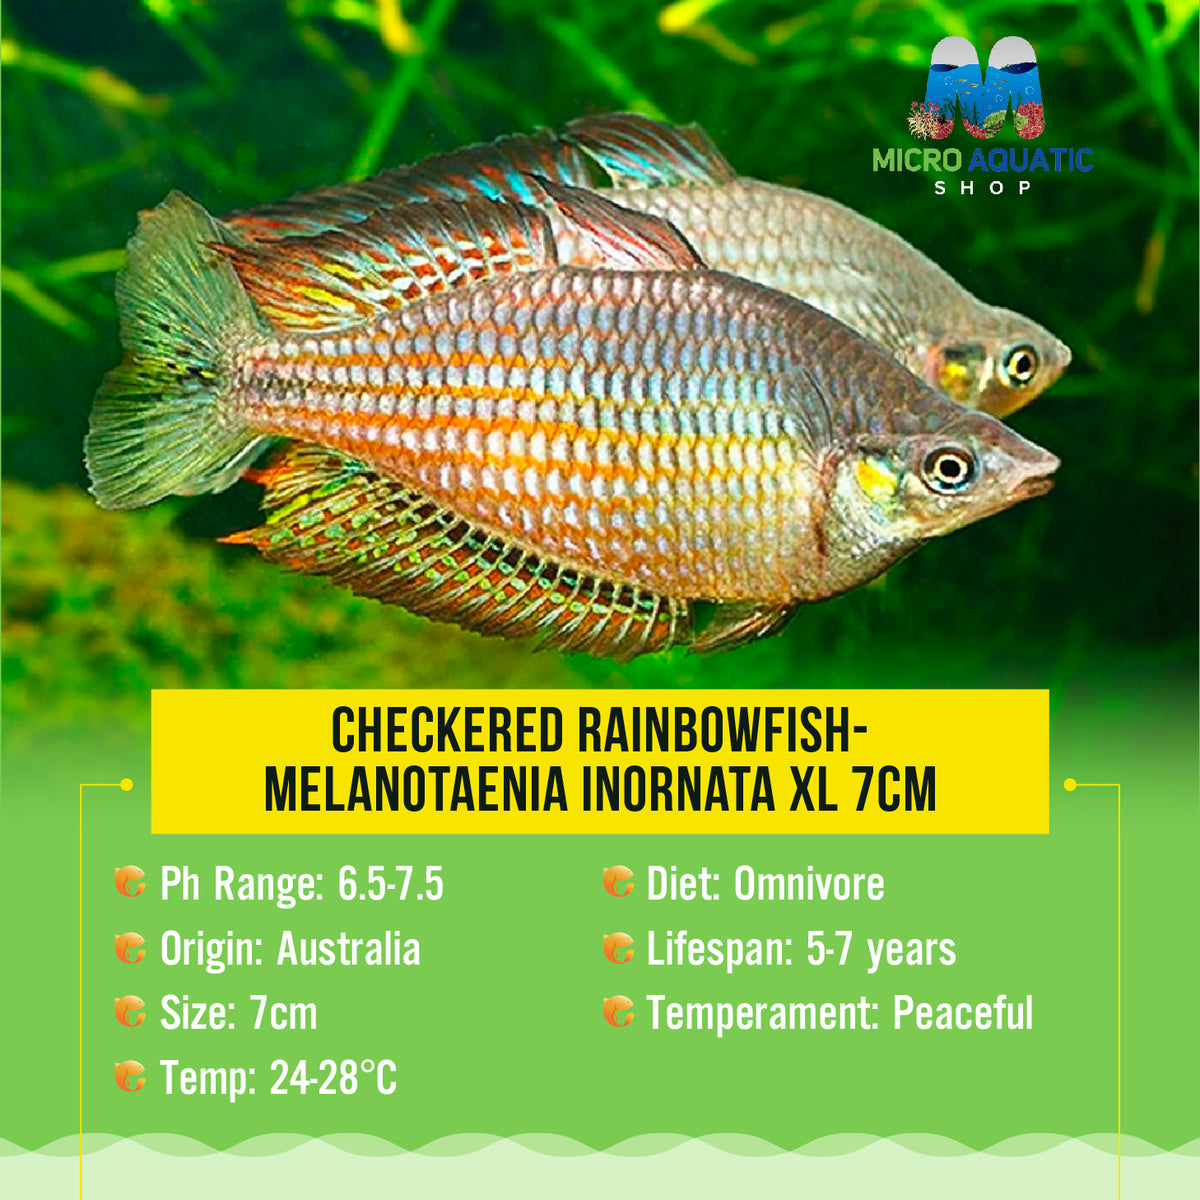 Checkered Rainbowfish- Melanotaenia inornata XL 7cm